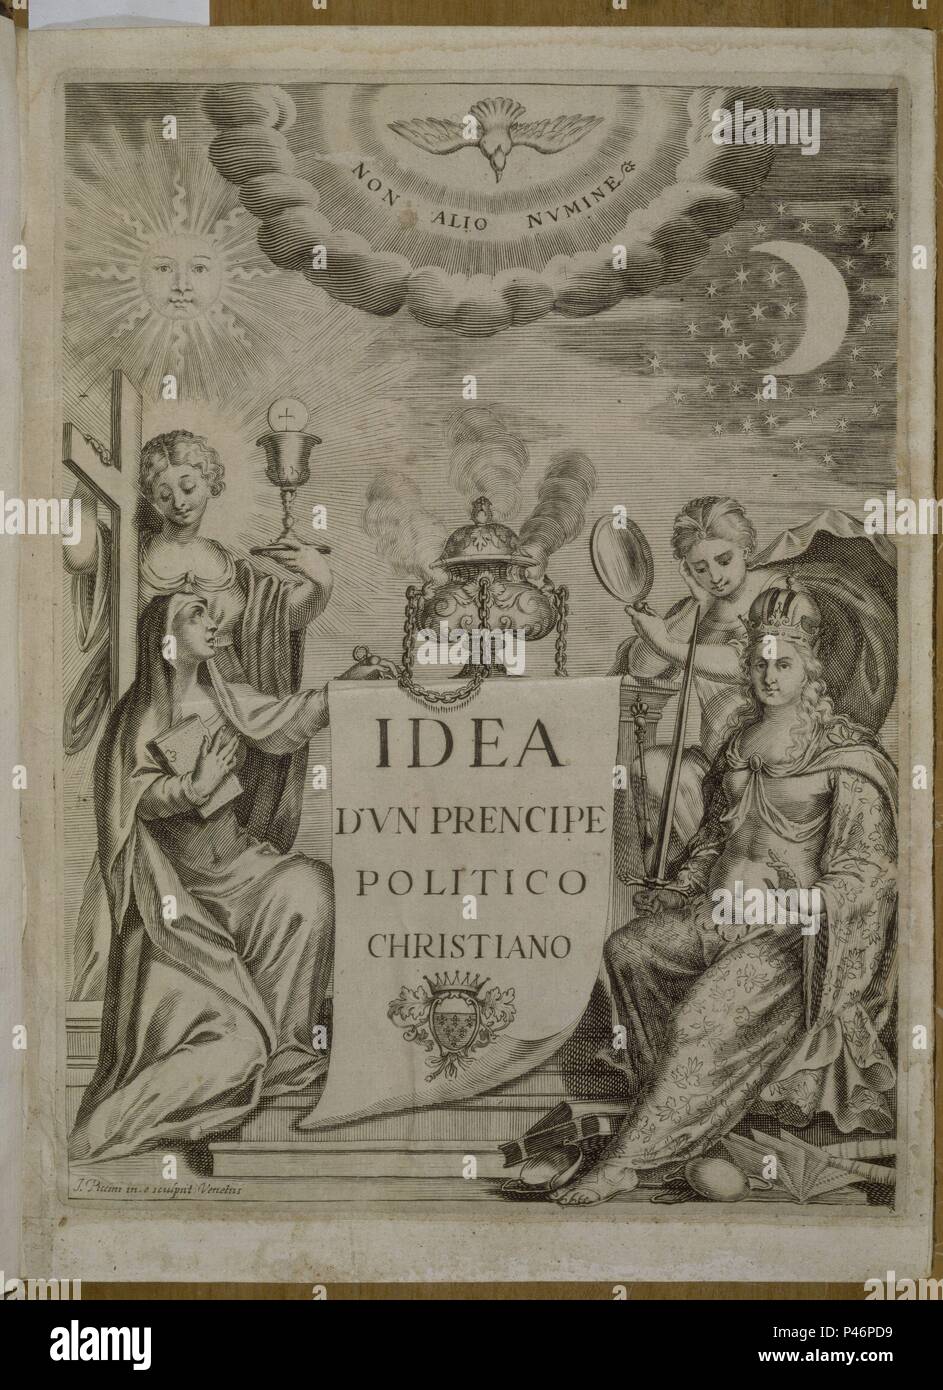 IDEA DE UN PRINCIPE POLITICO CRISTIANO - PORTADILLA - CONOCIDA COMO "LAS  EMPRESAS" - 1648. Author: Diego Saavedra Fajardo (1584-1648). Location:  BIBLIOTECA NACIONAL-COLECCION, MADRID, SPAIN Stock Photo - Alamy